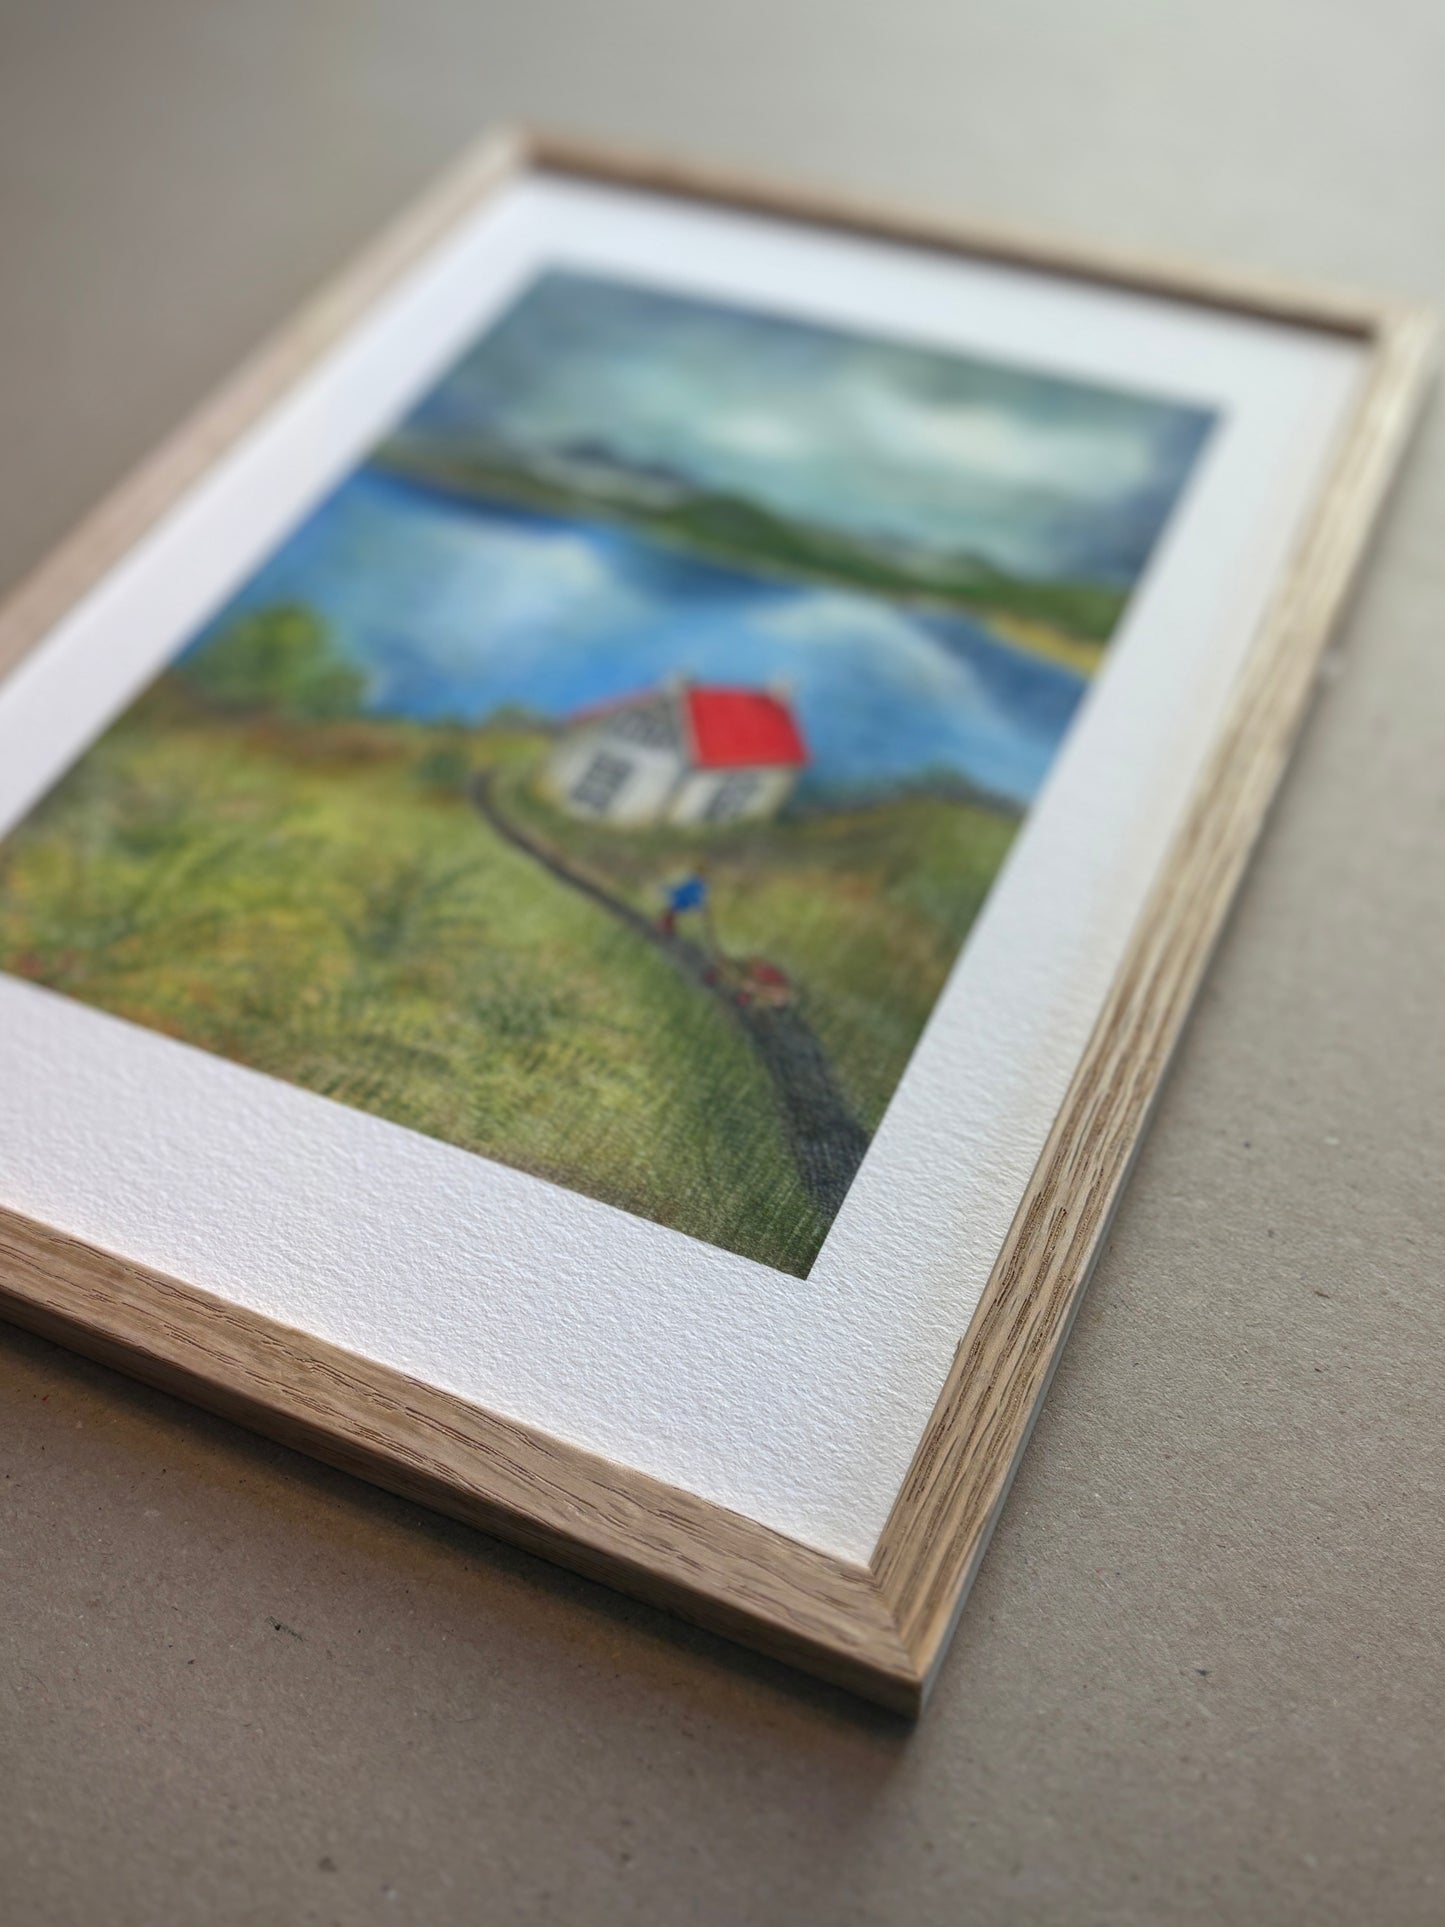 A4 Kunstdruck "kleines Haus am Wasser" mit Rahmen Eiche